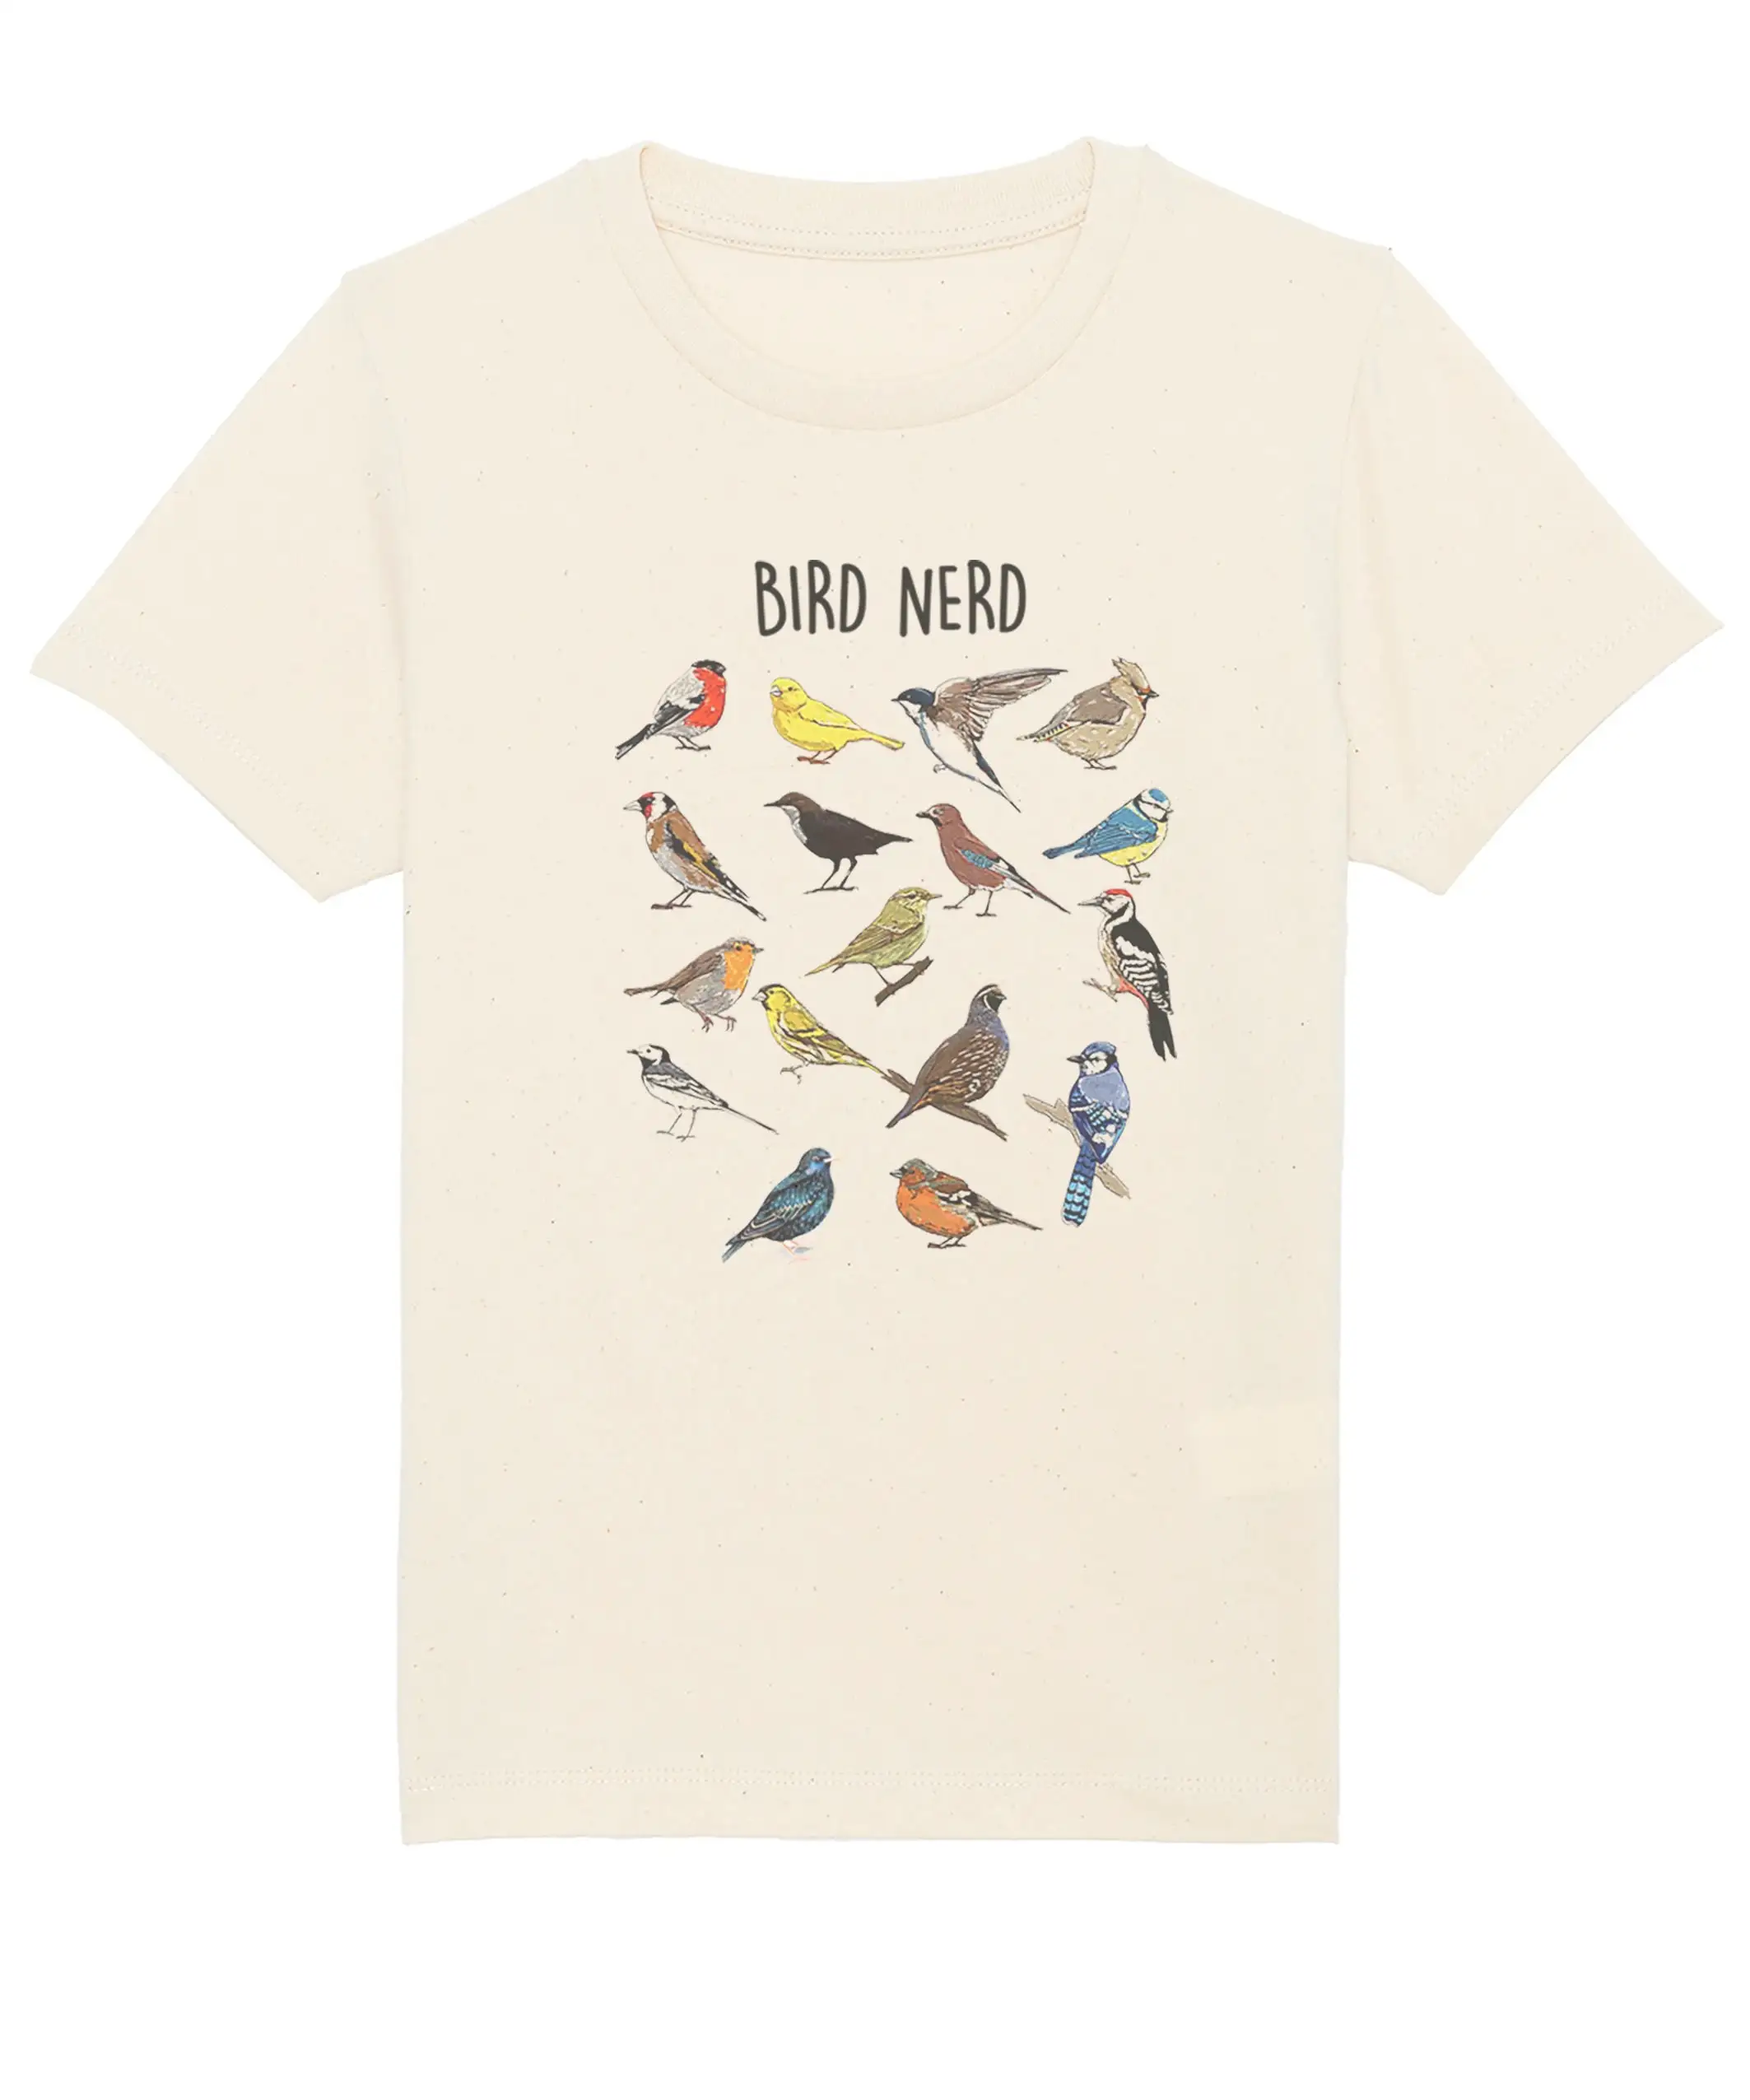 Футболка с птицей Чайлдс Детская футболка с птицей Подарок на день рождения для